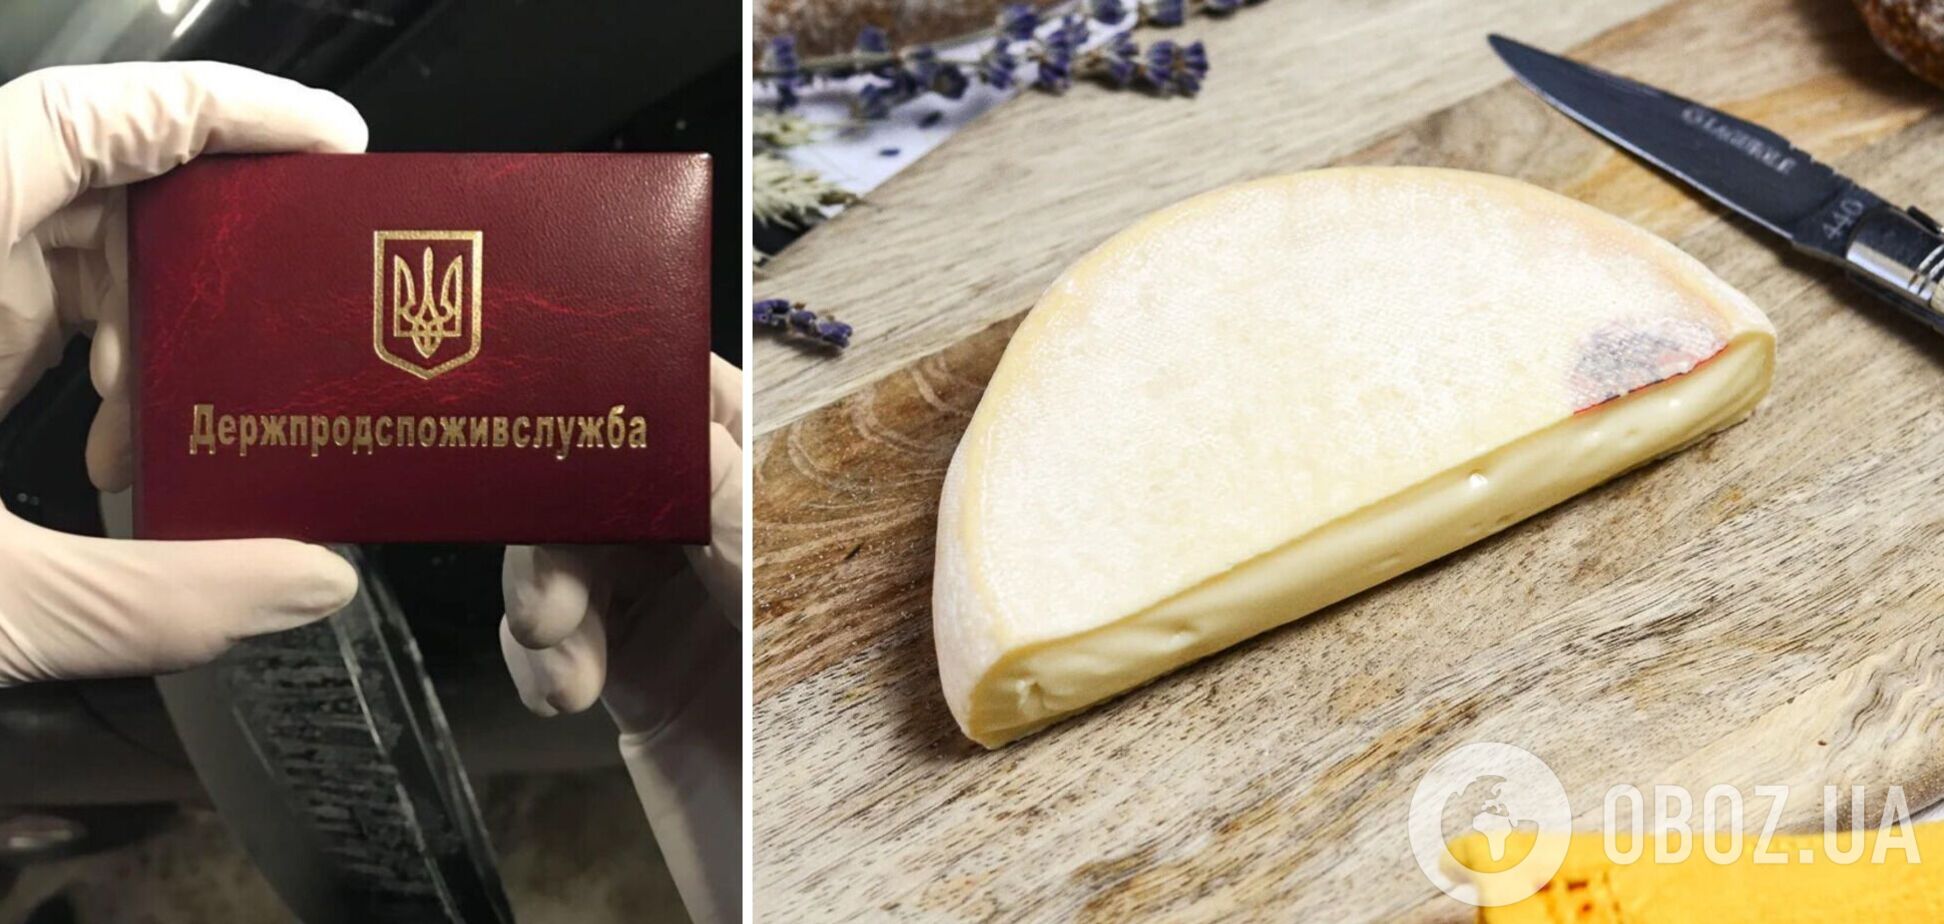 Сыр со стафилококком не попал в Украину